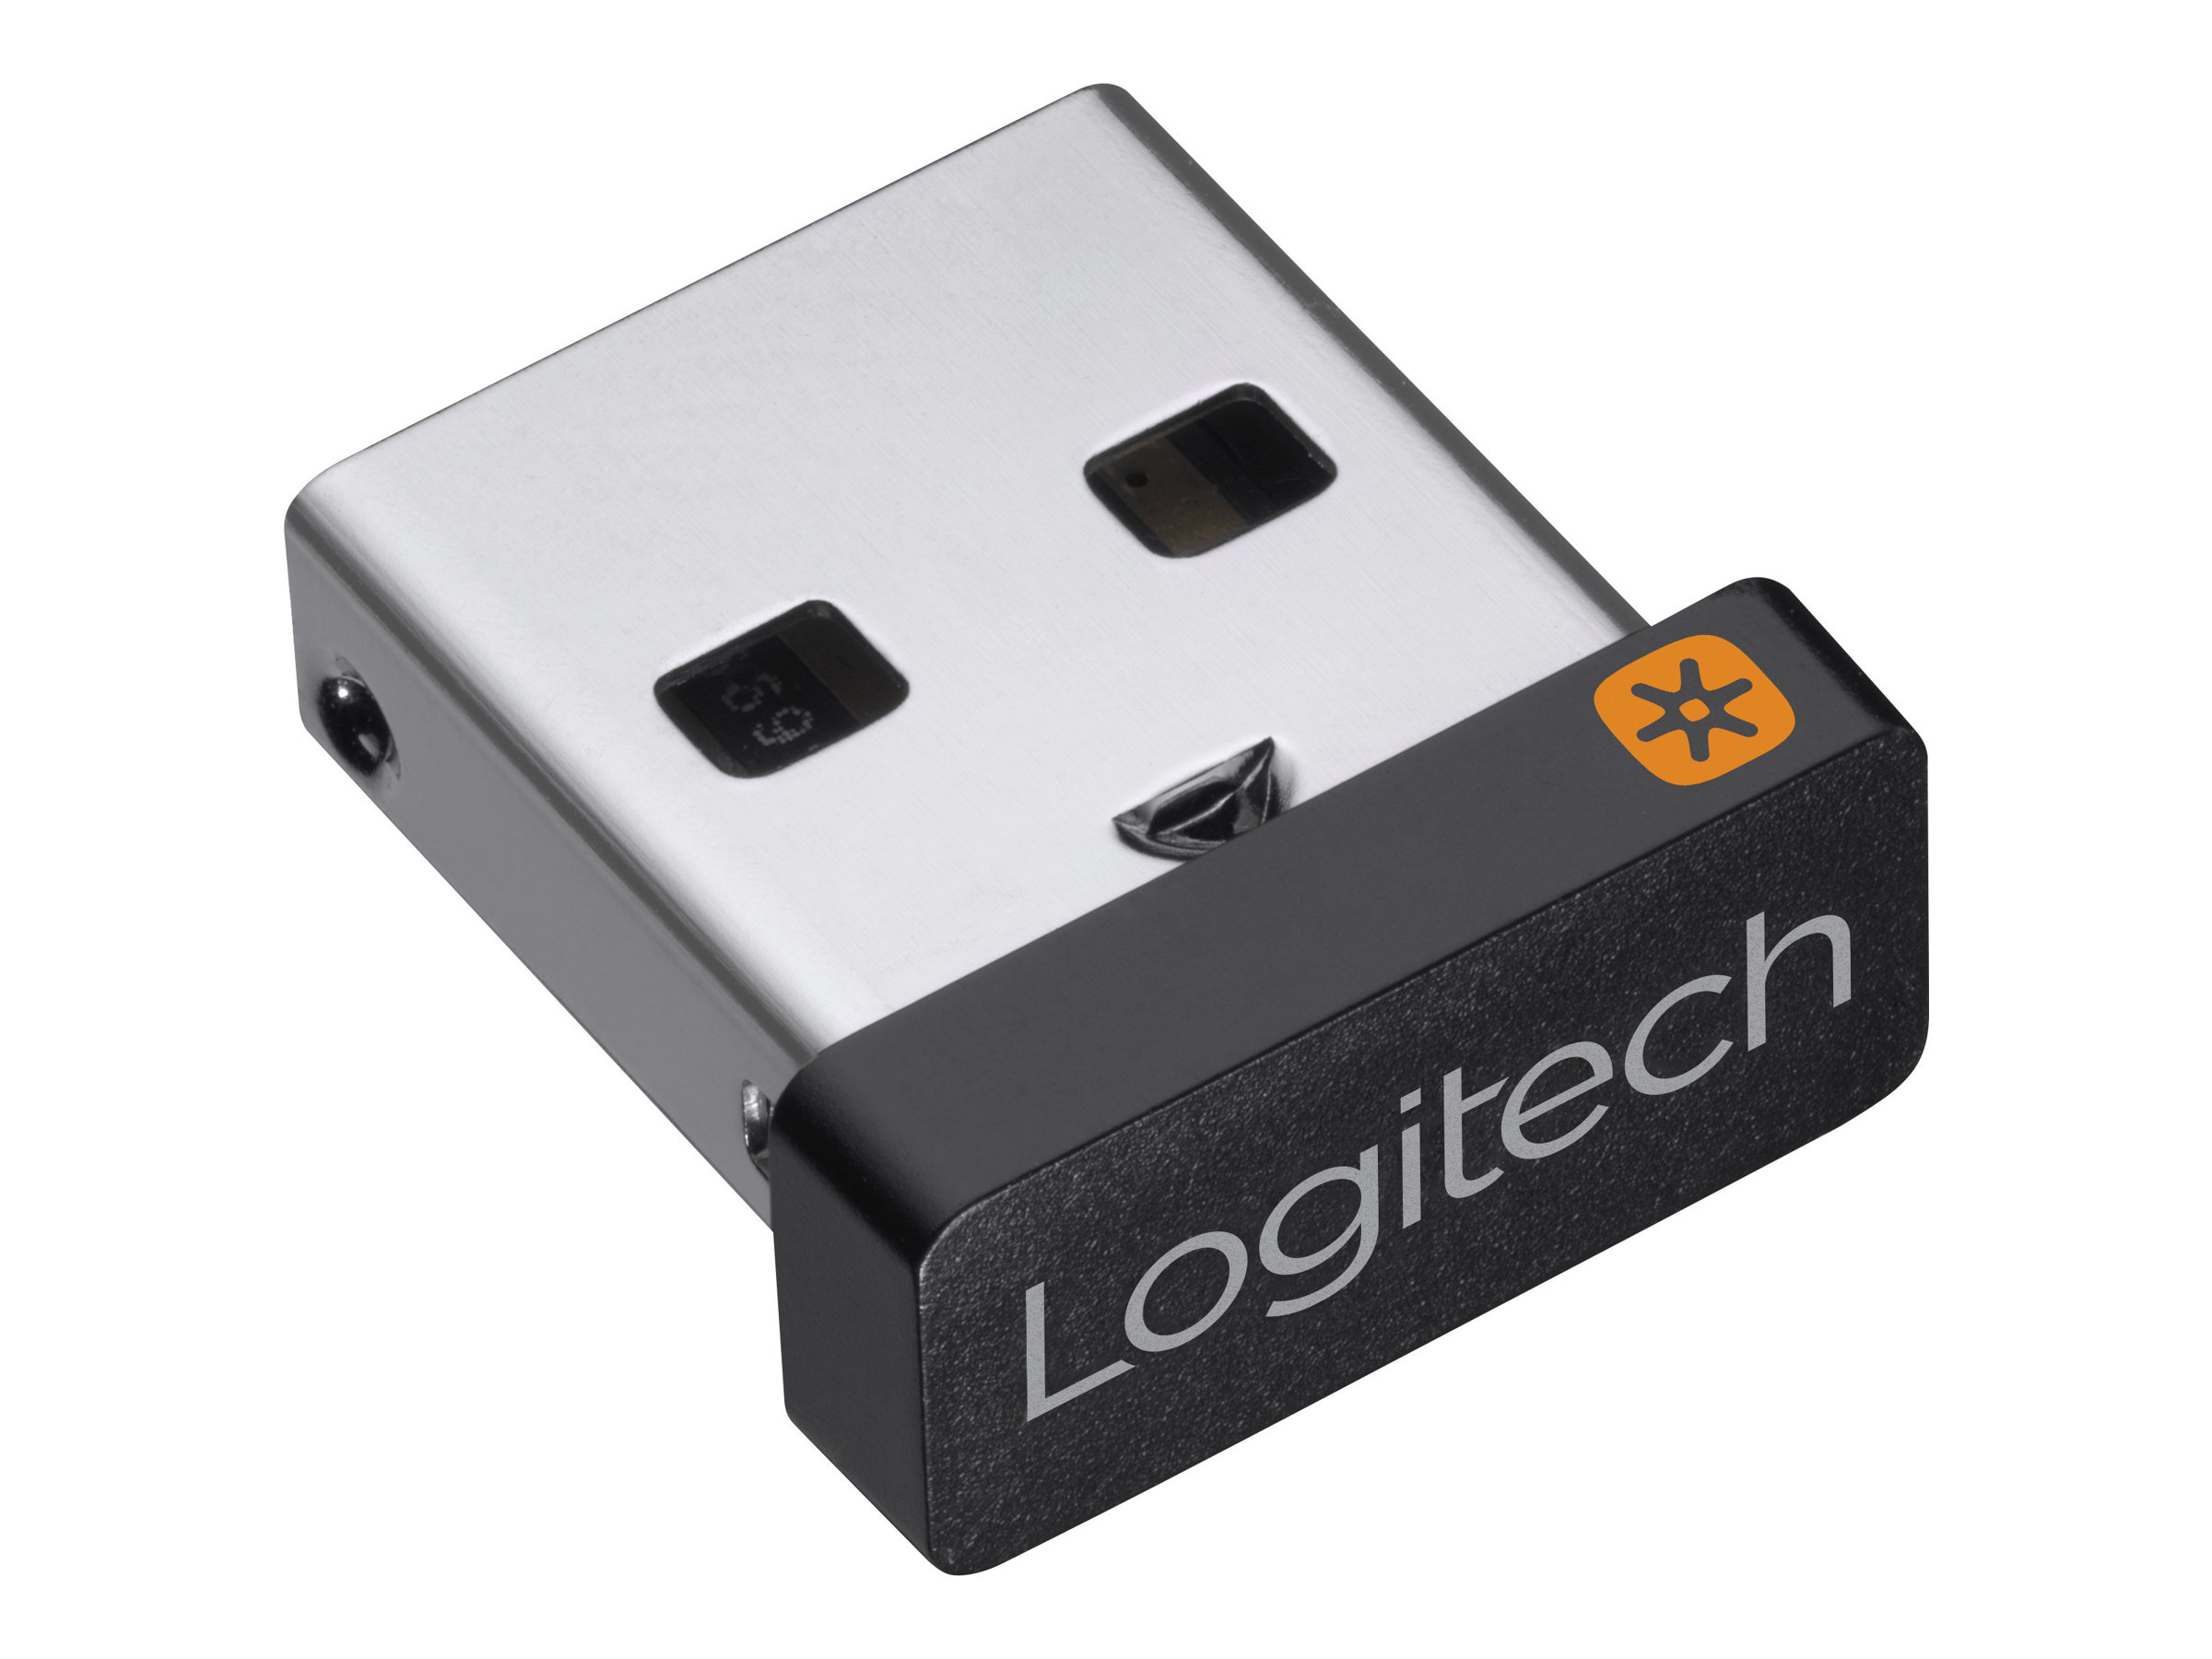 Logitech Unifying Receiver - Wireless Maus- / Tastaturempfänger - USB